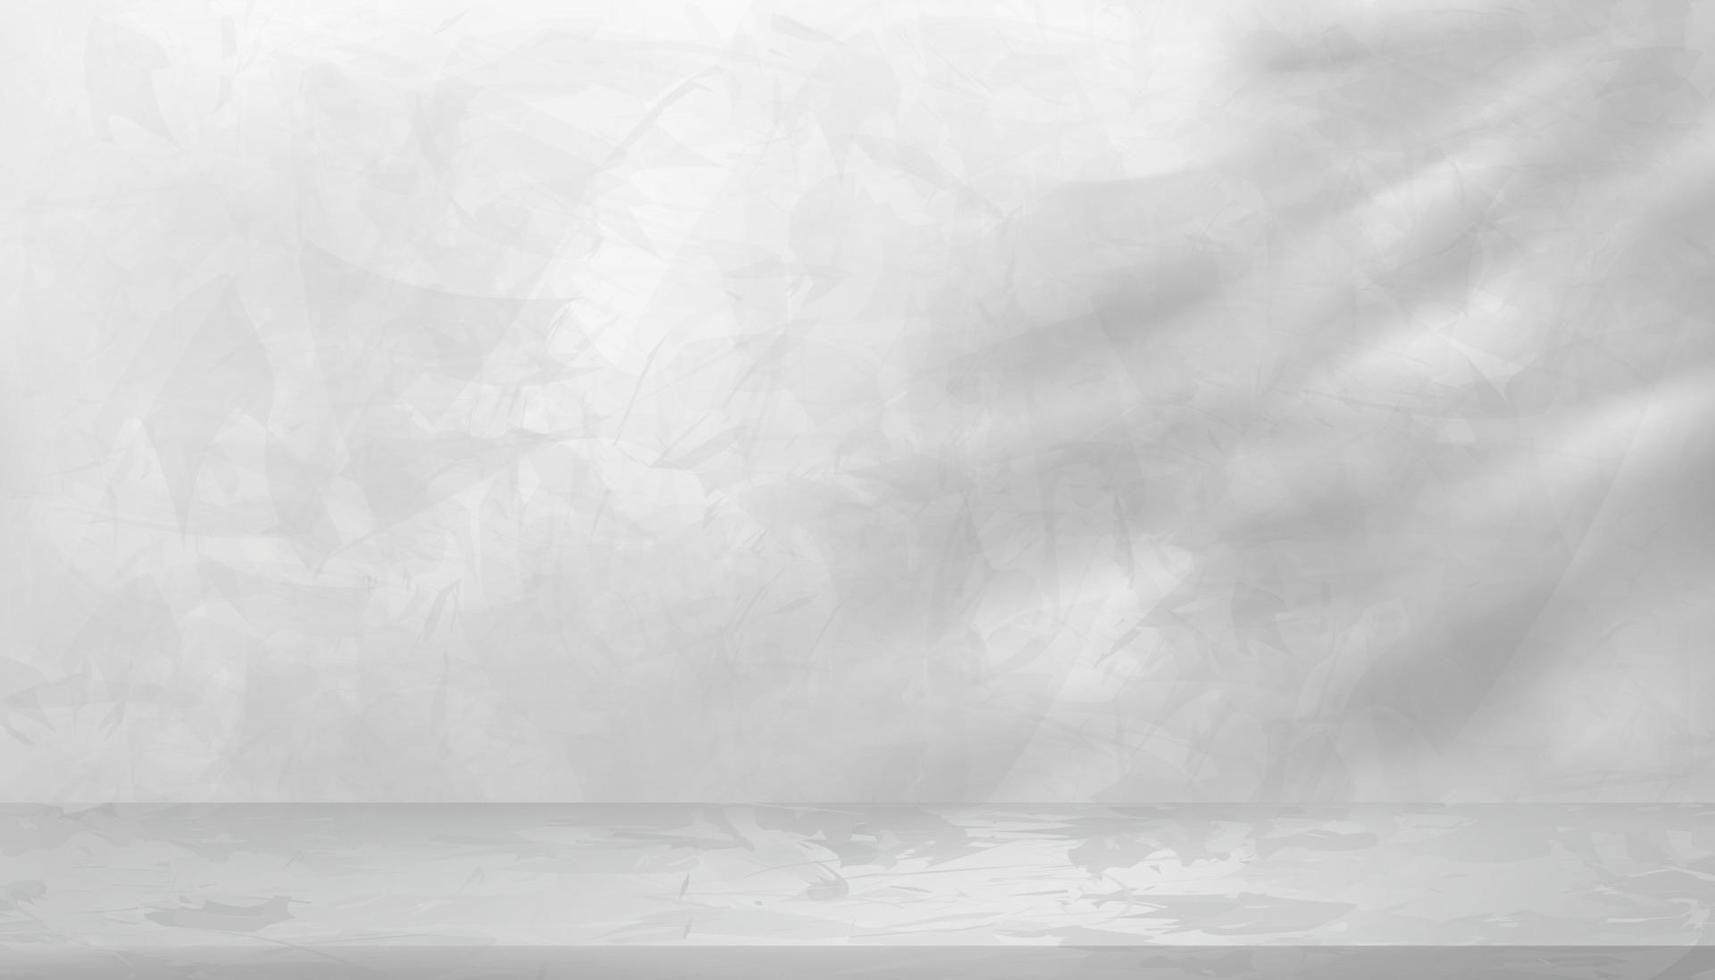 Mauer grau Beton Textur Hintergrund mit verlassen Schatten Überzug, grau Zement Boden, Tropen Blatt Silhouette auf Marmor Muster Oberfläche, Hintergrund Hintergrund 3d Anzeige Studio zum Produkt Präsentation vektor